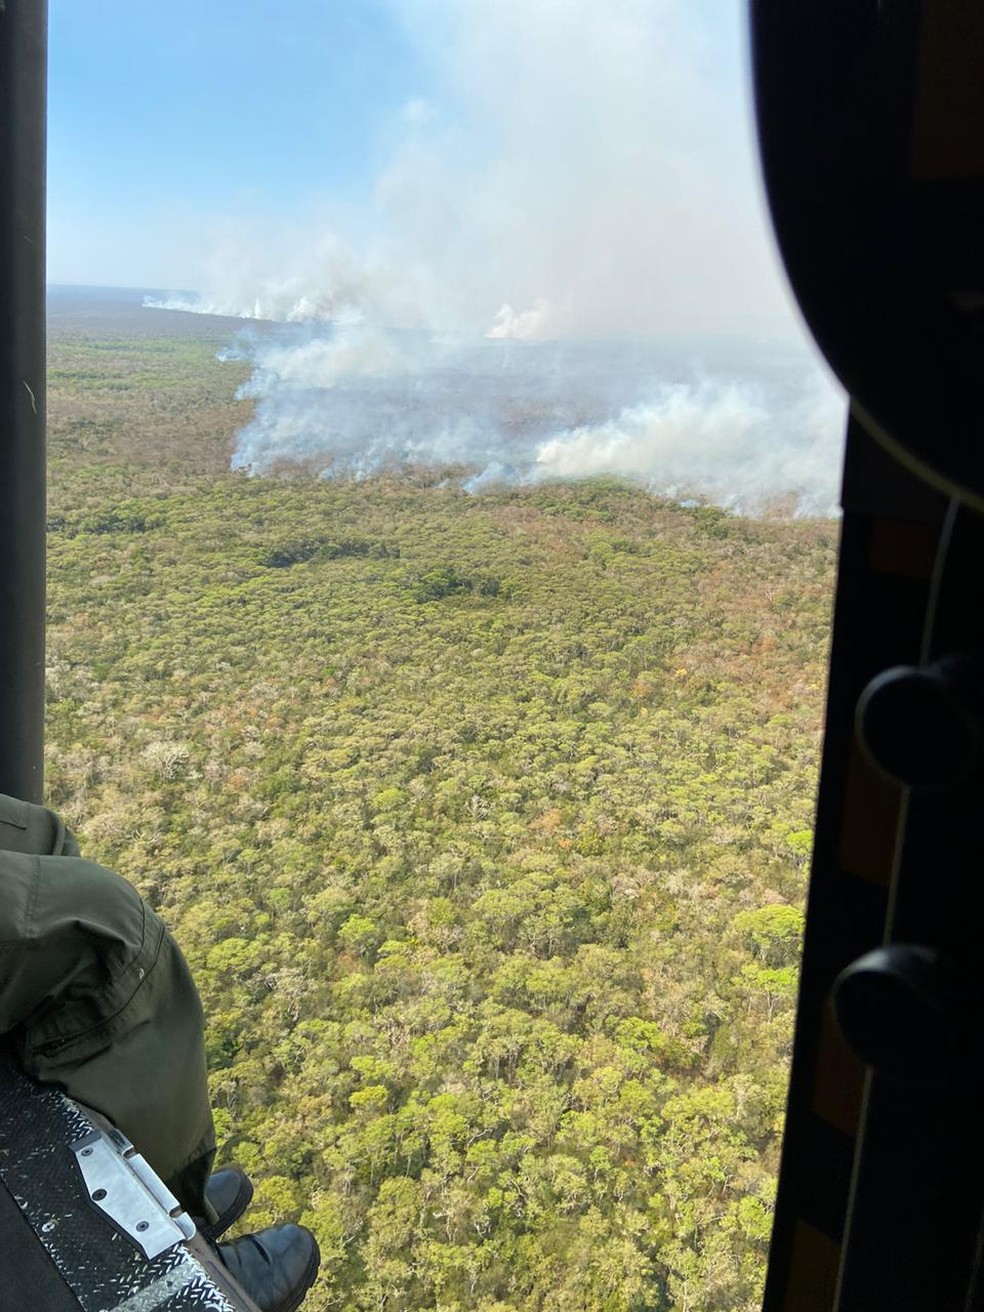 Falta de chuva há meses prejudica o trabalho de combate ao fogo no Pantanal — Foto: Thielli Bairros/Arquivo pessoal